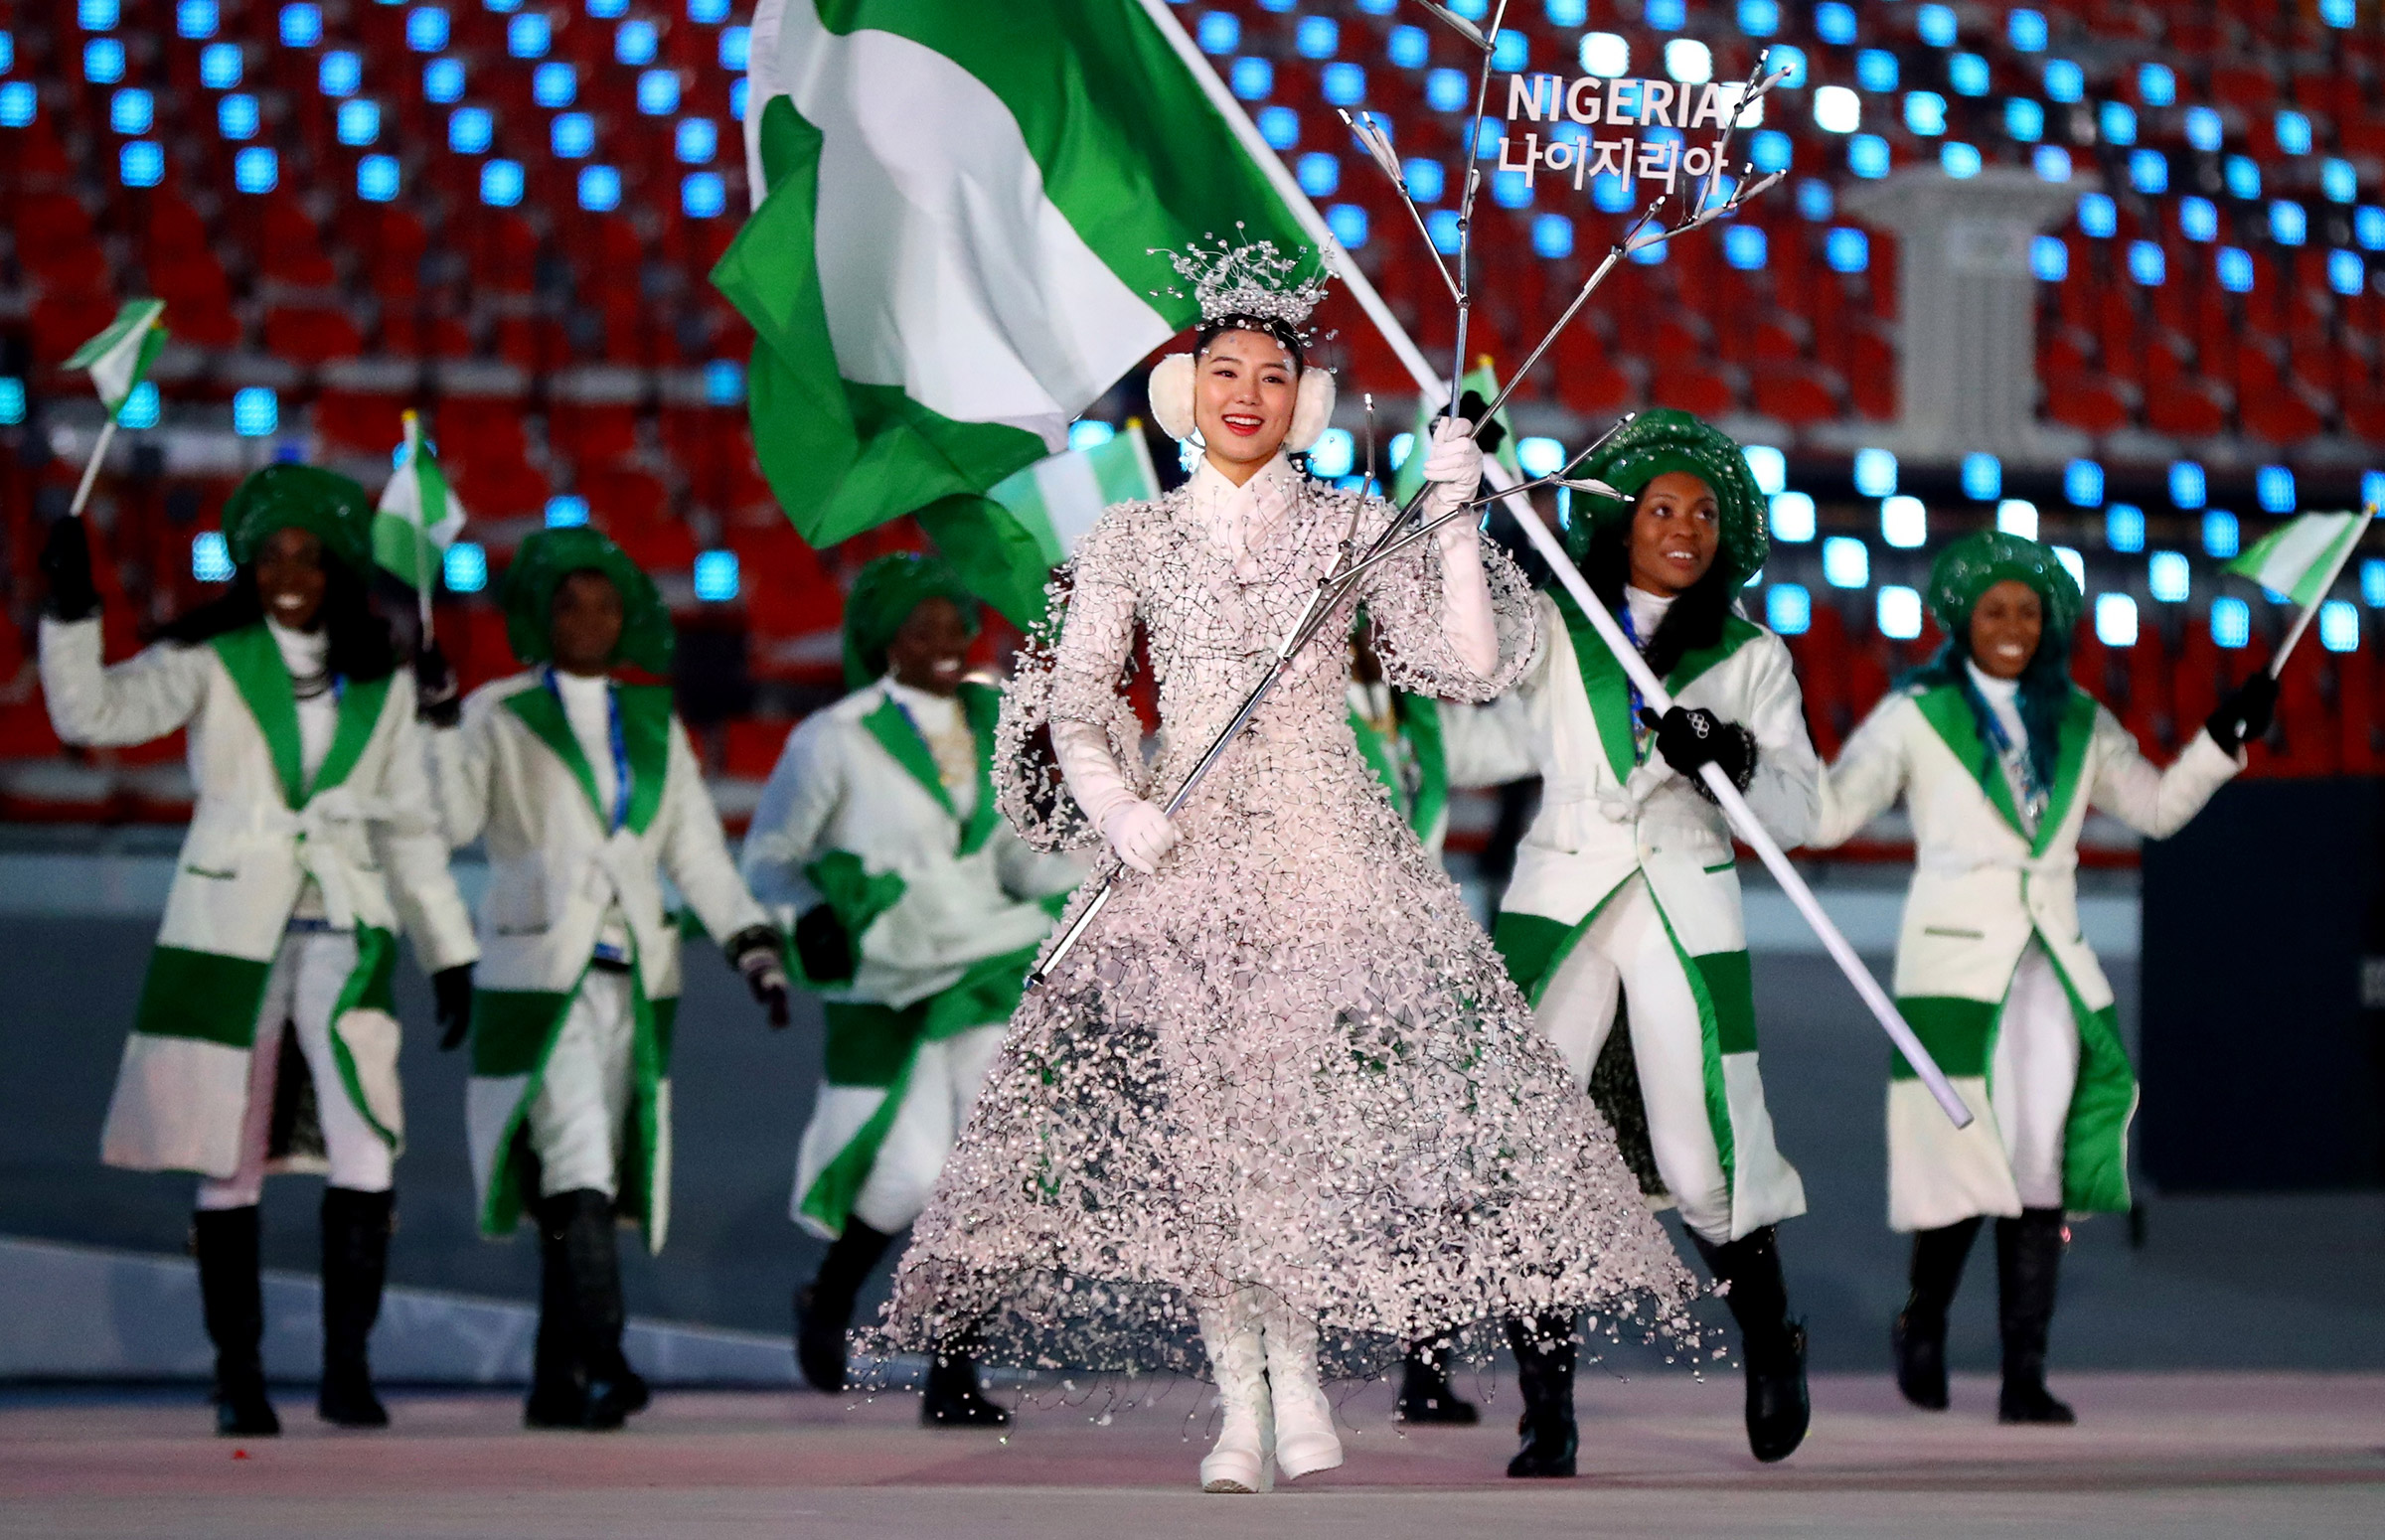 Флаг сборной Нигерии, впервые принимающей участие в Олимпиаде, пронесла спортсменка Нгози Онвумере.​
&nbsp;
